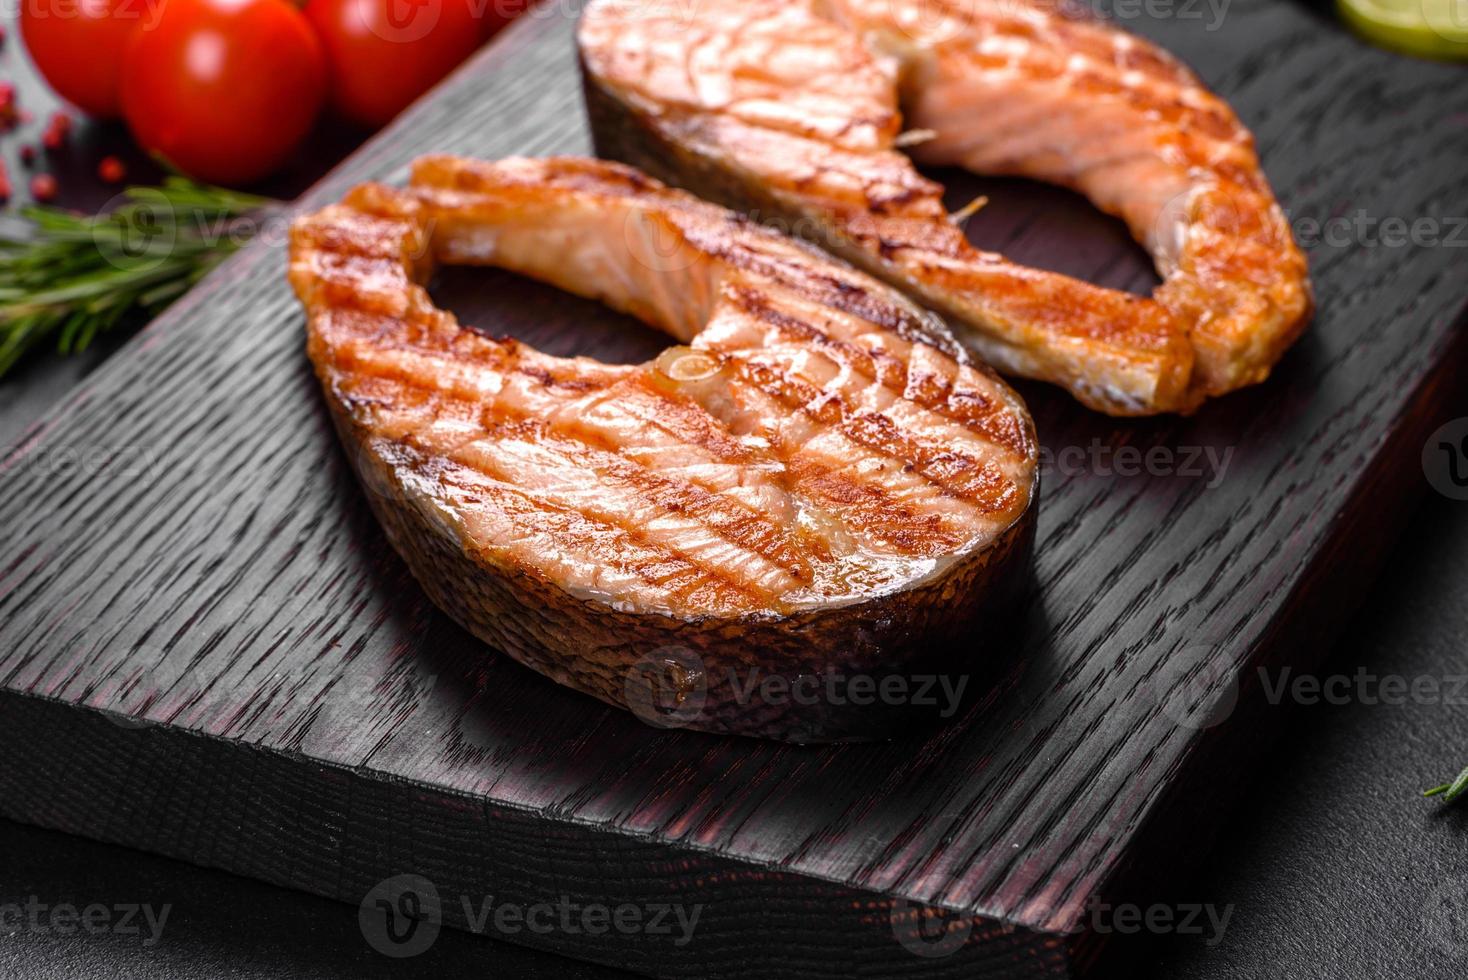 Deliziosa bistecca di salmone cotta fresca con spezie ed erbe cotta alla griglia foto